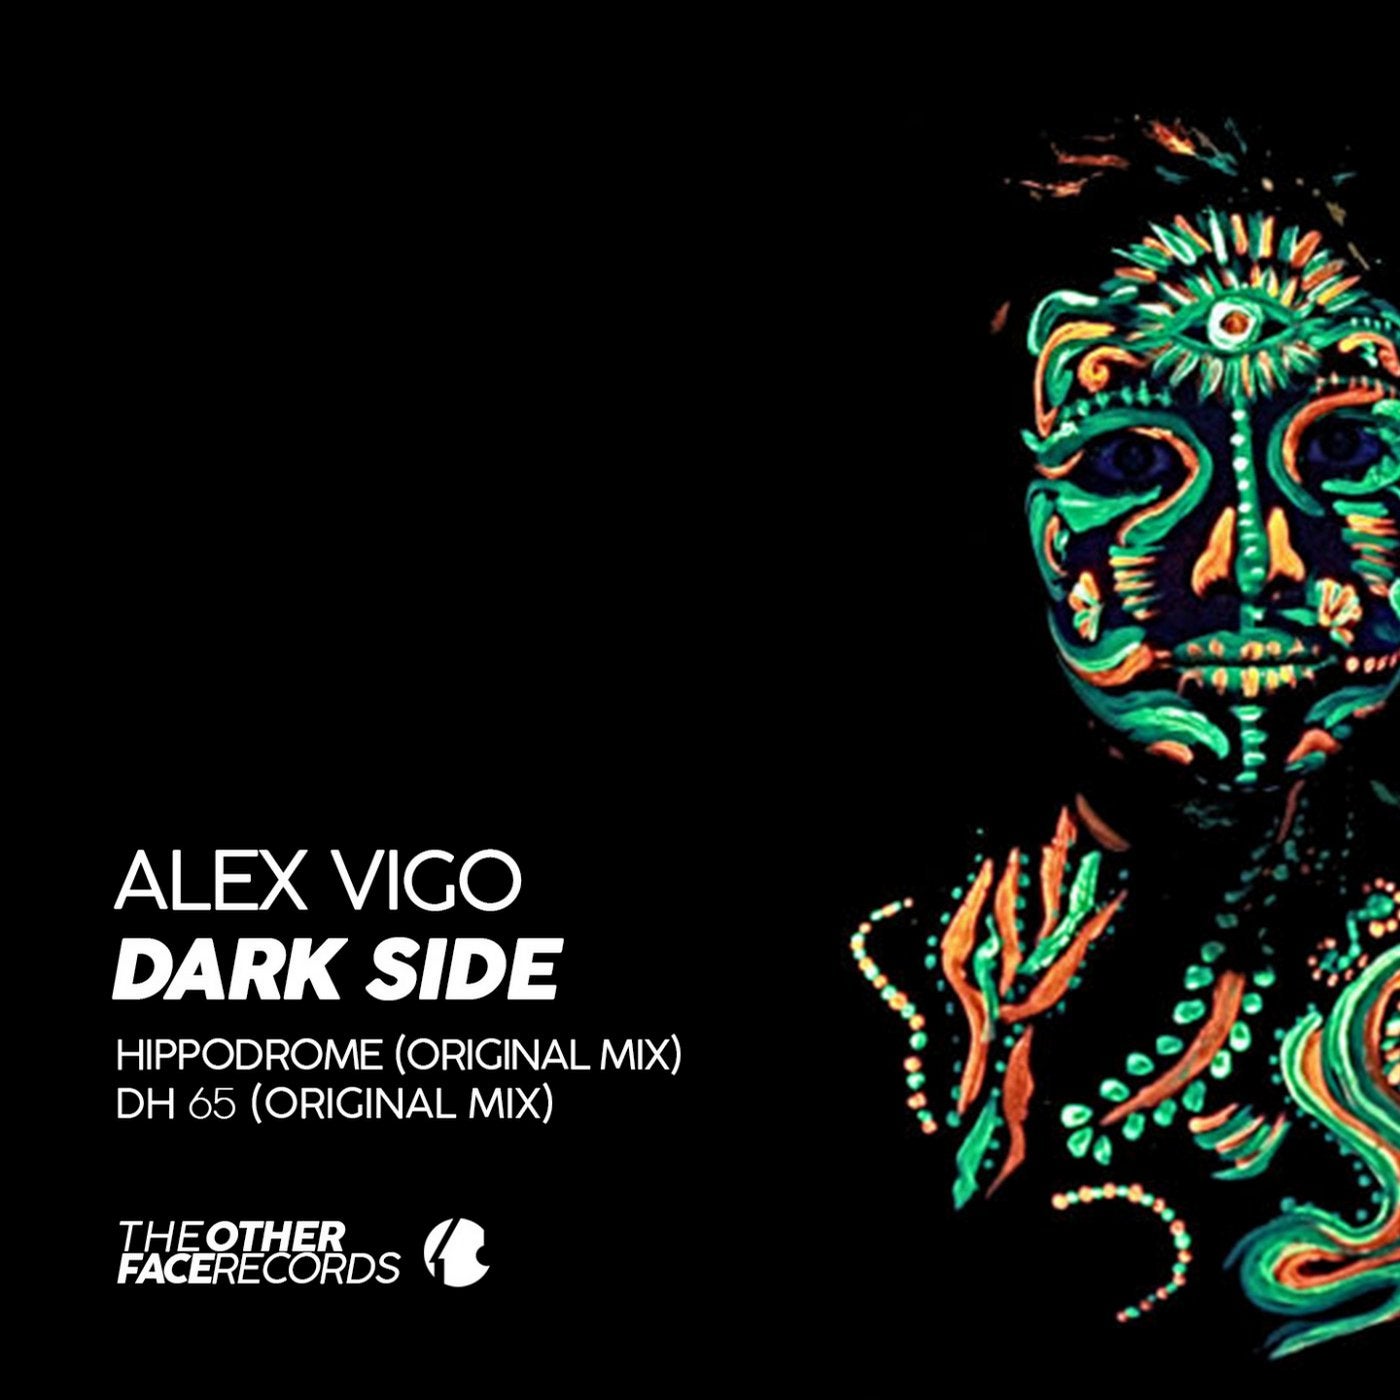 Alex Vigo